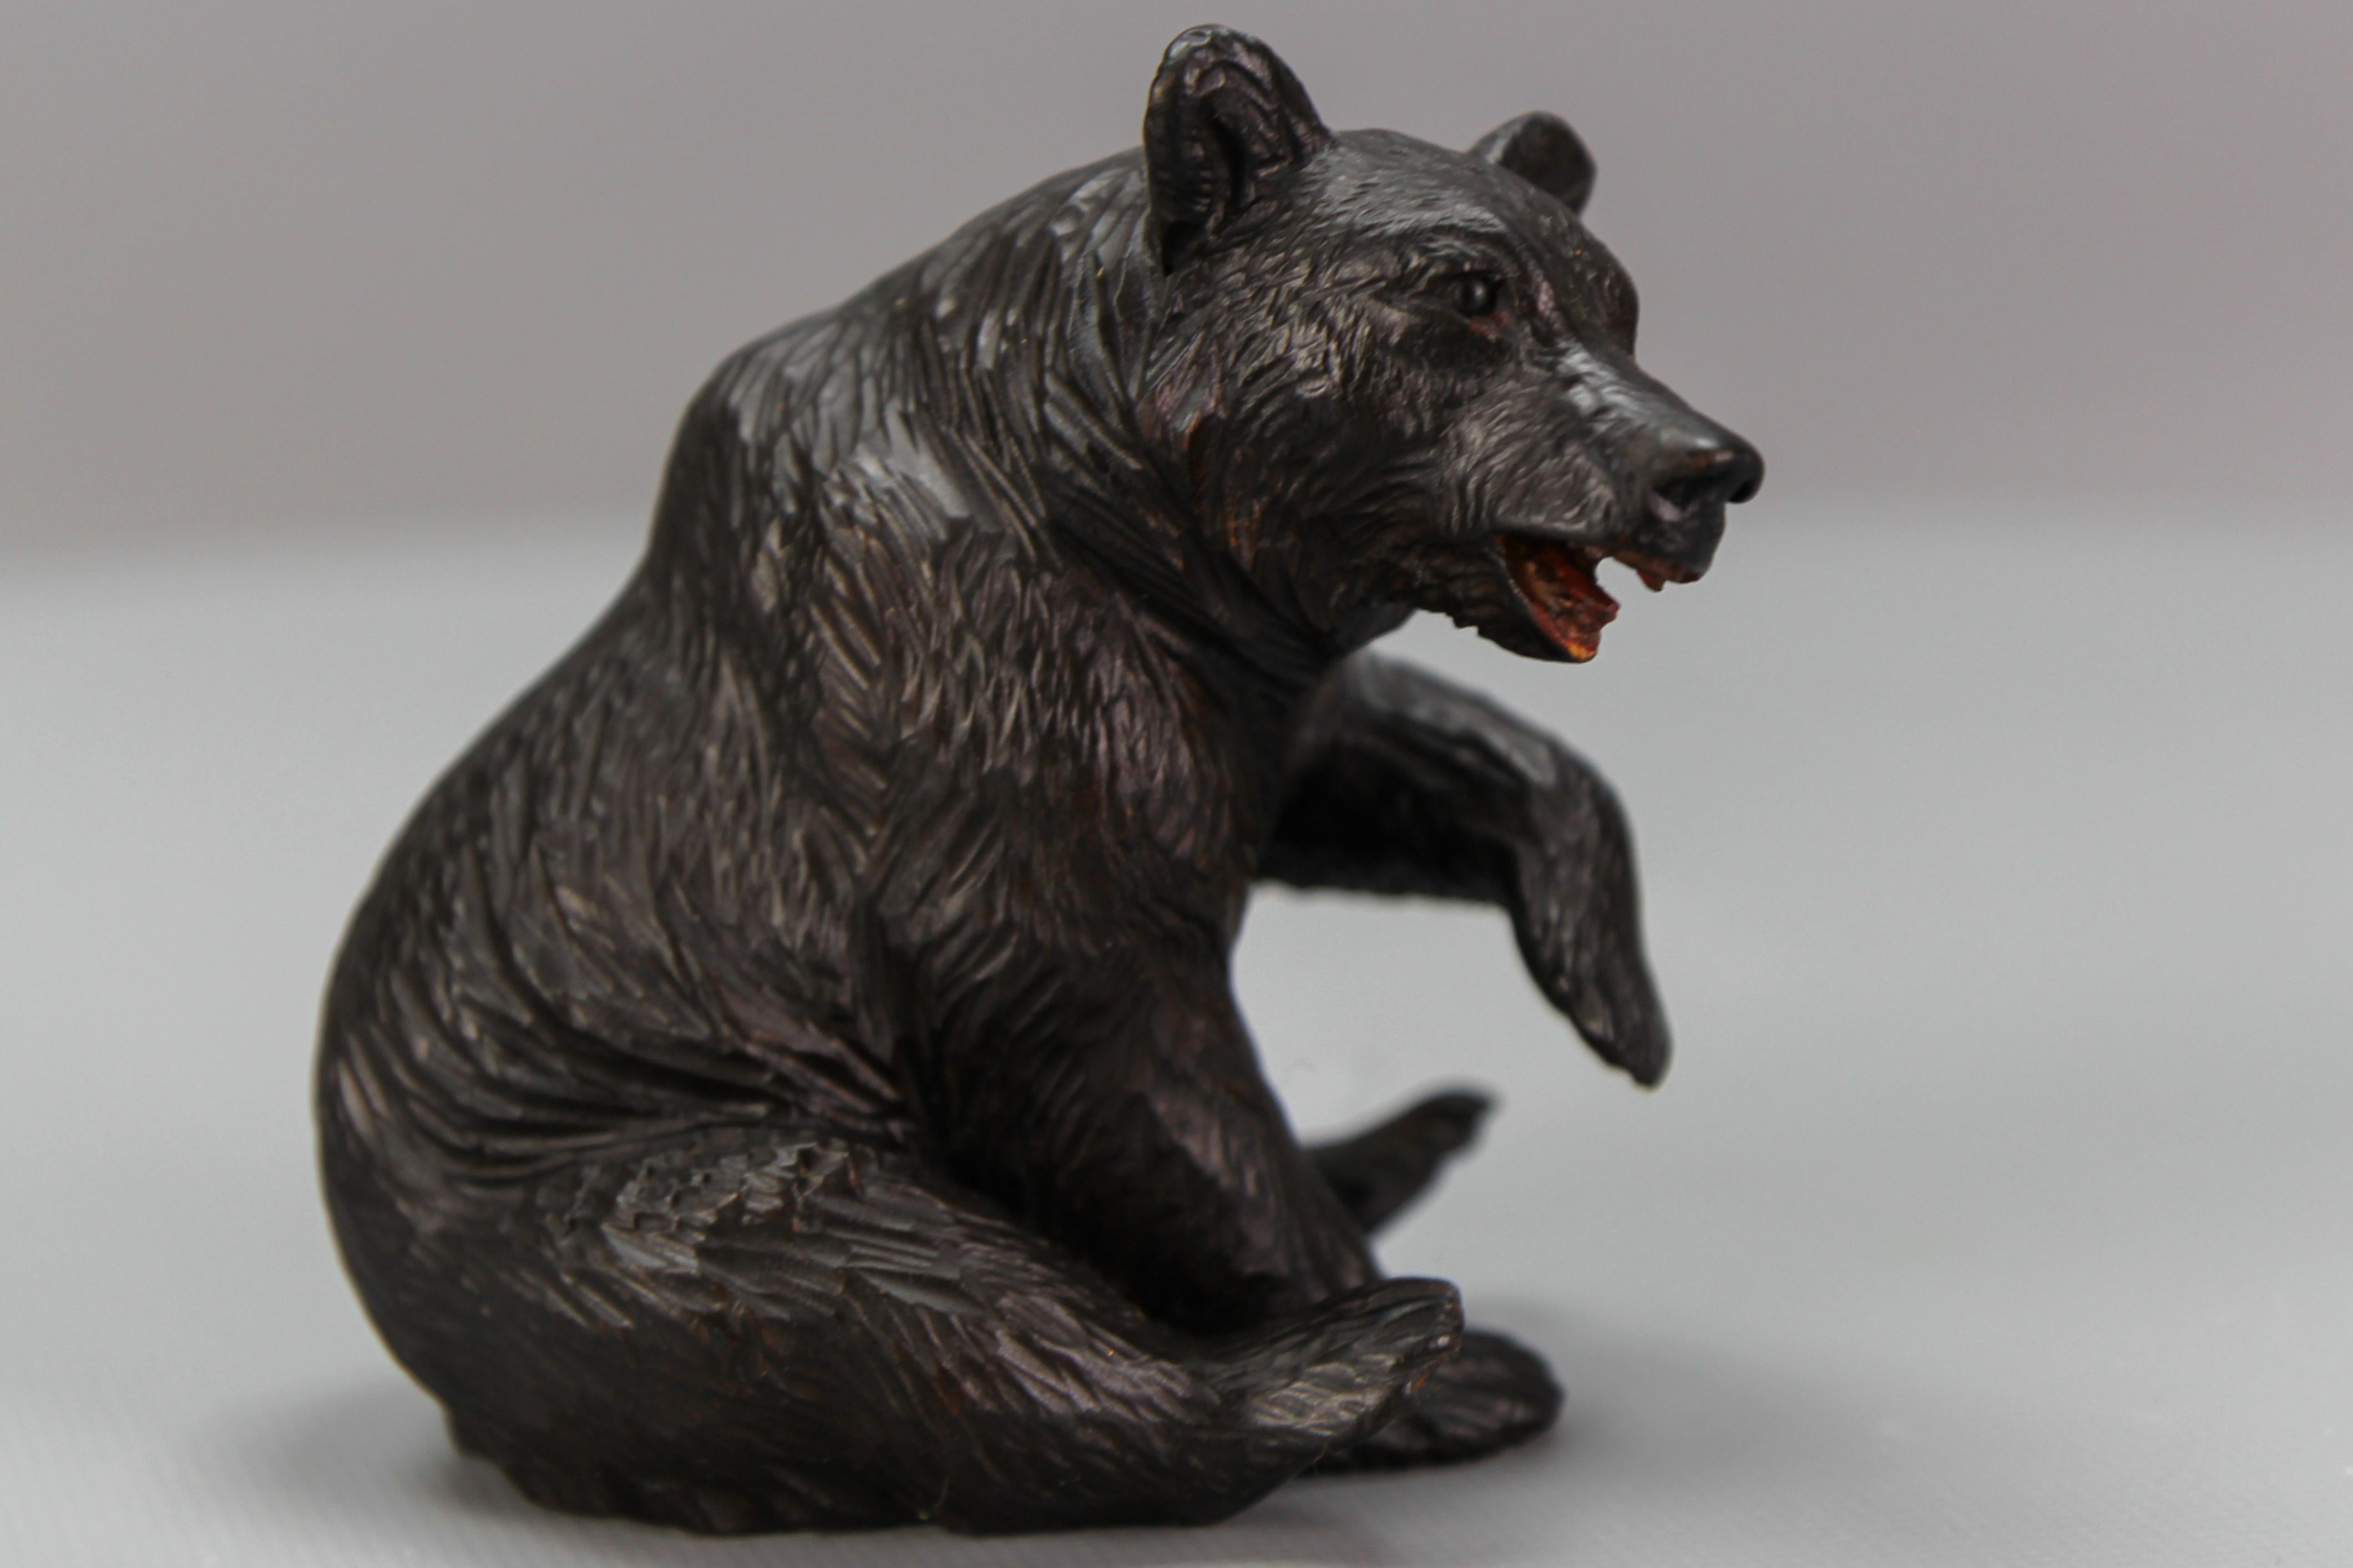 Antique sculpture d'ours assis en Forêt Noire
Une adorable figurine d'ours assis, sculptée à la main de main de maître. Suisse, vers 1900.
Dimensions, environ : hauteur : 11,5 cm / 4,52 in ; largeur : 8 cm / 3,15 in ; profondeur : 11 cm / 4,33